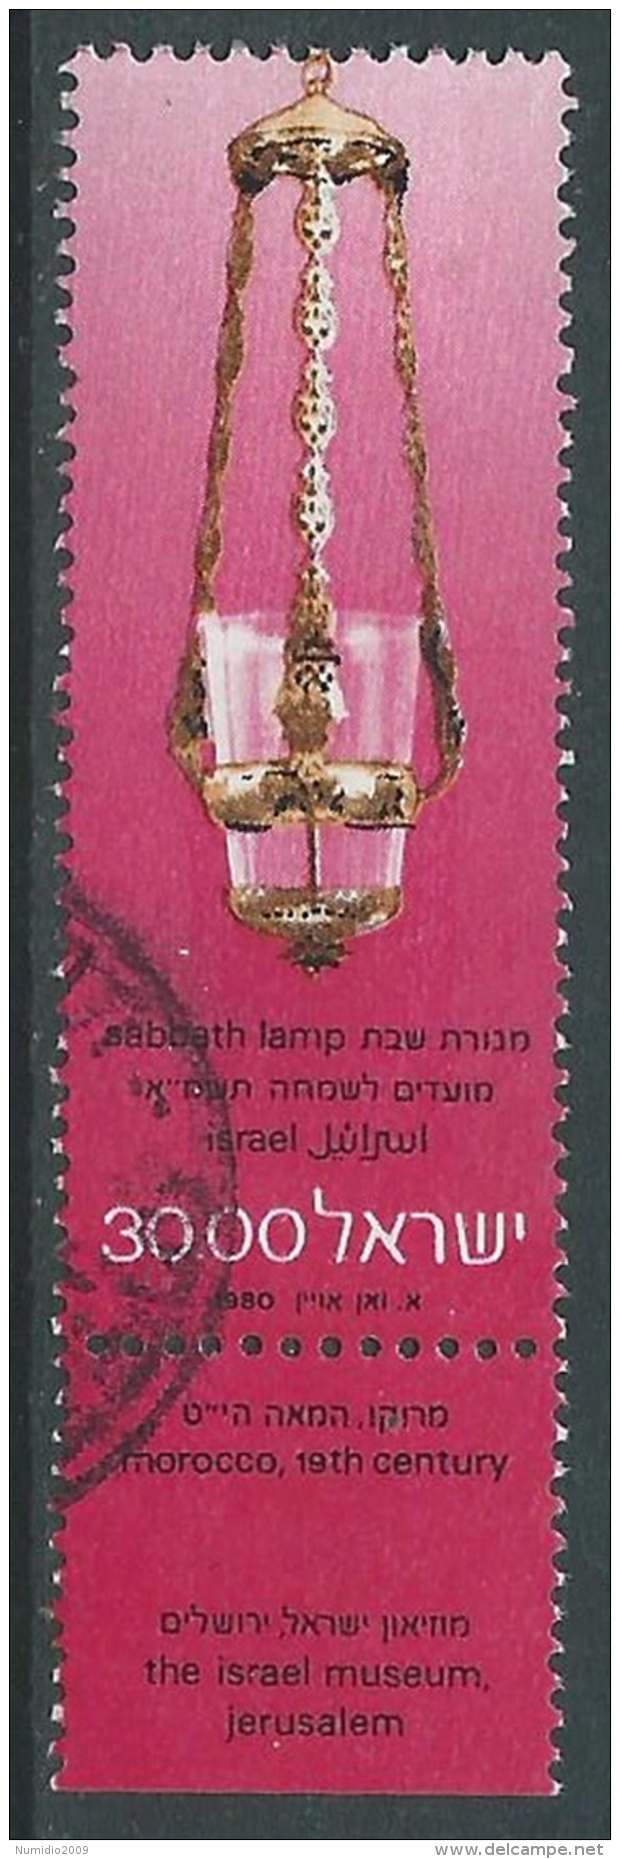 1980 ISRAELE USATO NUOVO ANNO 5741 30,00 CON APPENDICE - T18-5 - Oblitérés (avec Tabs)